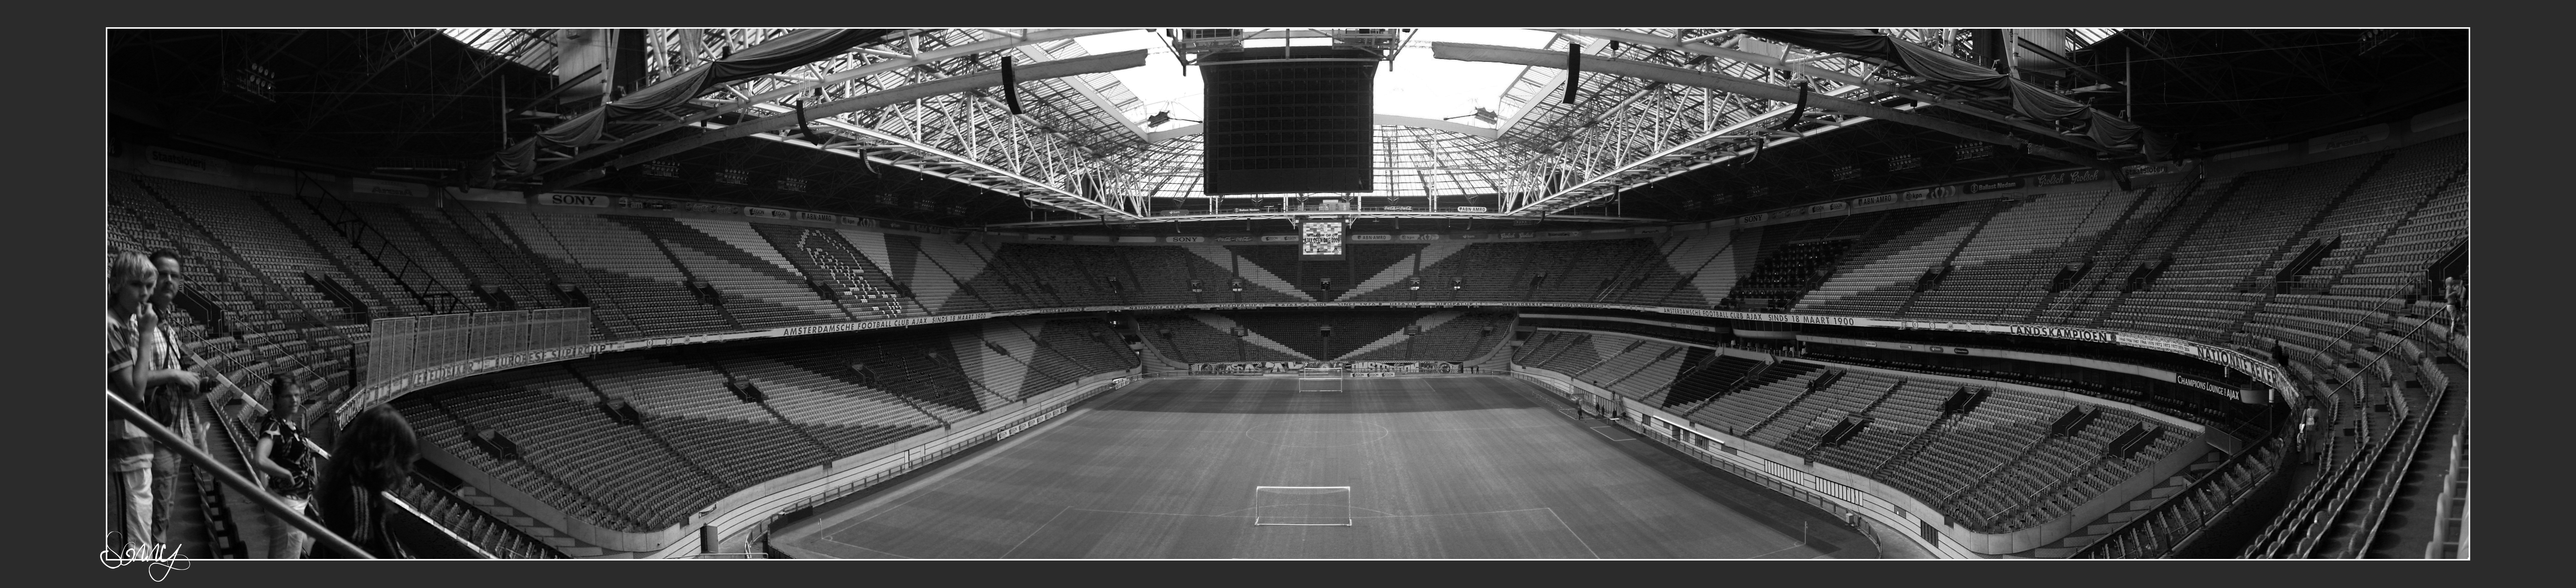 Hình nền Amsterdam Arena (20) - hình nền bóng đá - hình nền cầu thủ - hình nền đội bóng